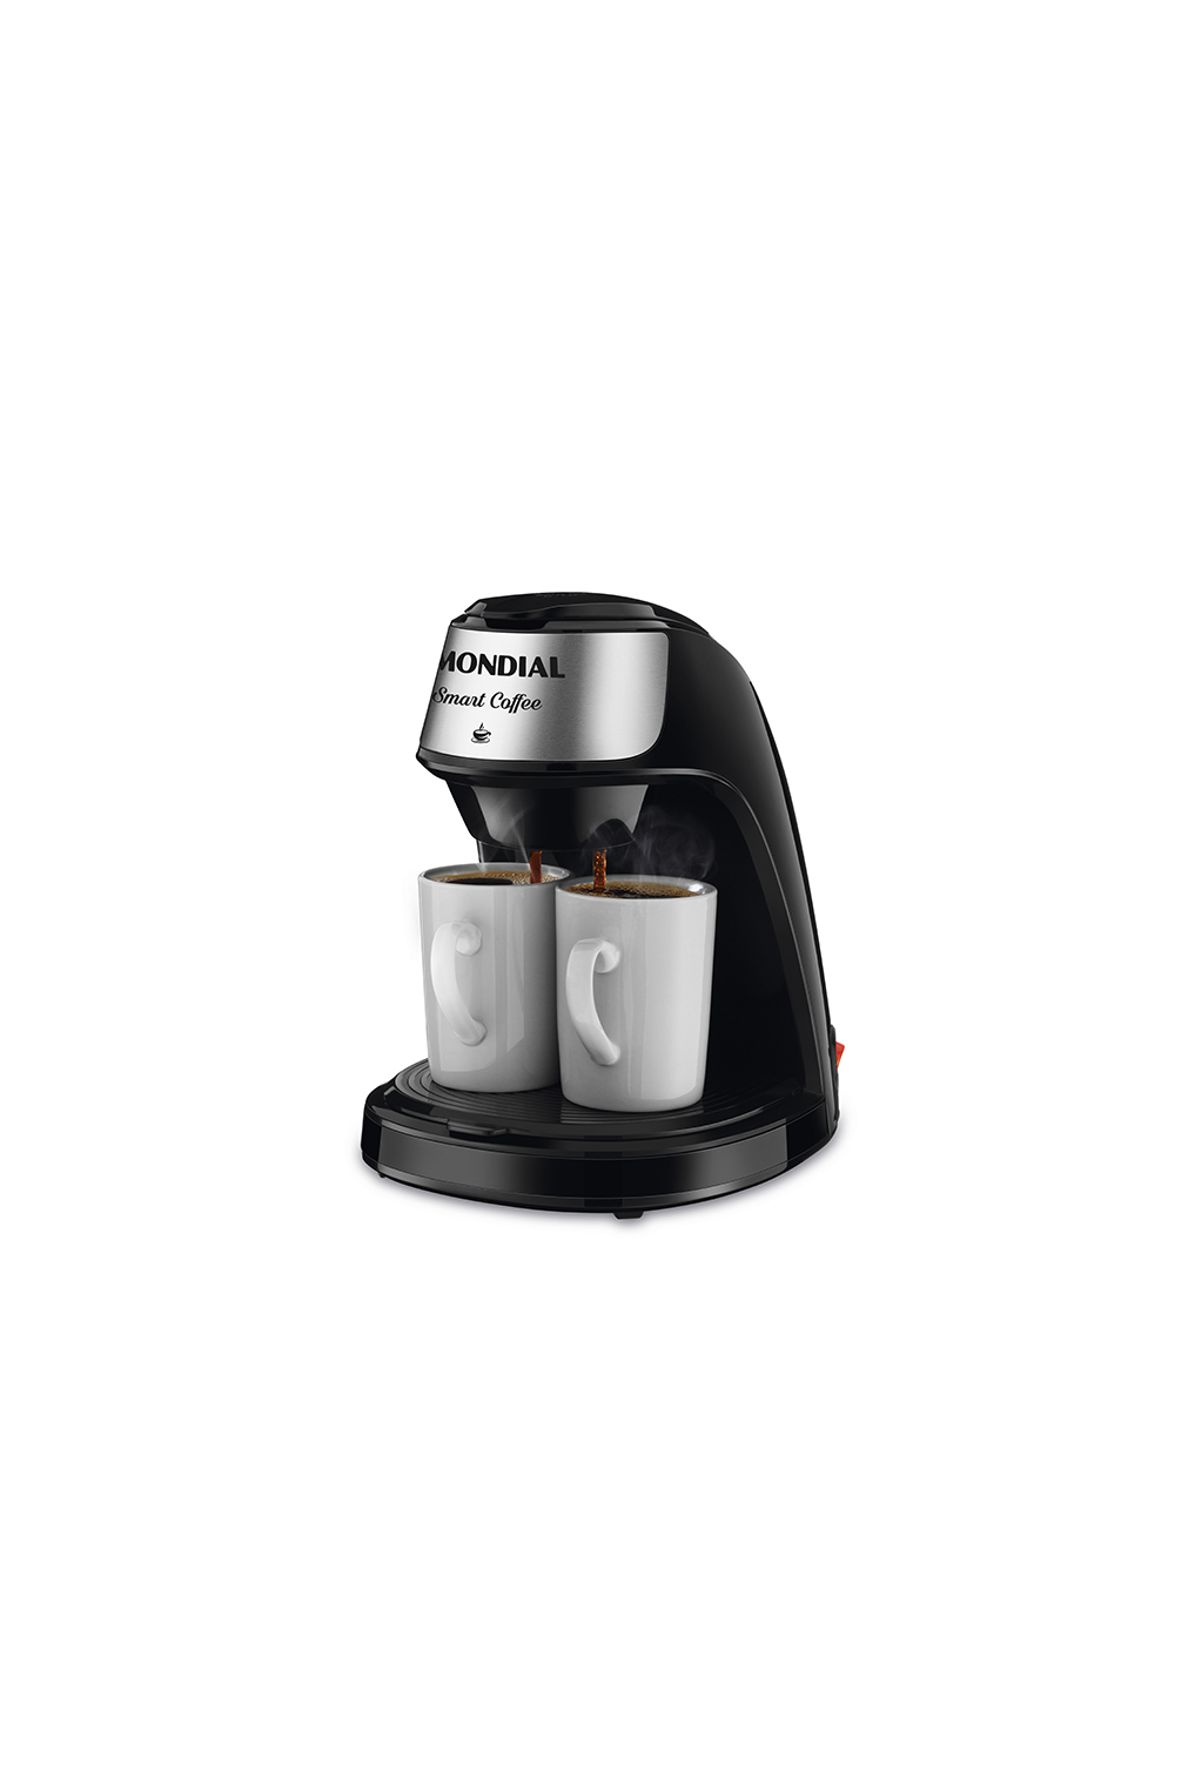 CAFETEIRA SMART COFFE C-42 BI 127V 60HZ 2X PRETA 4992-01 MONDIAL